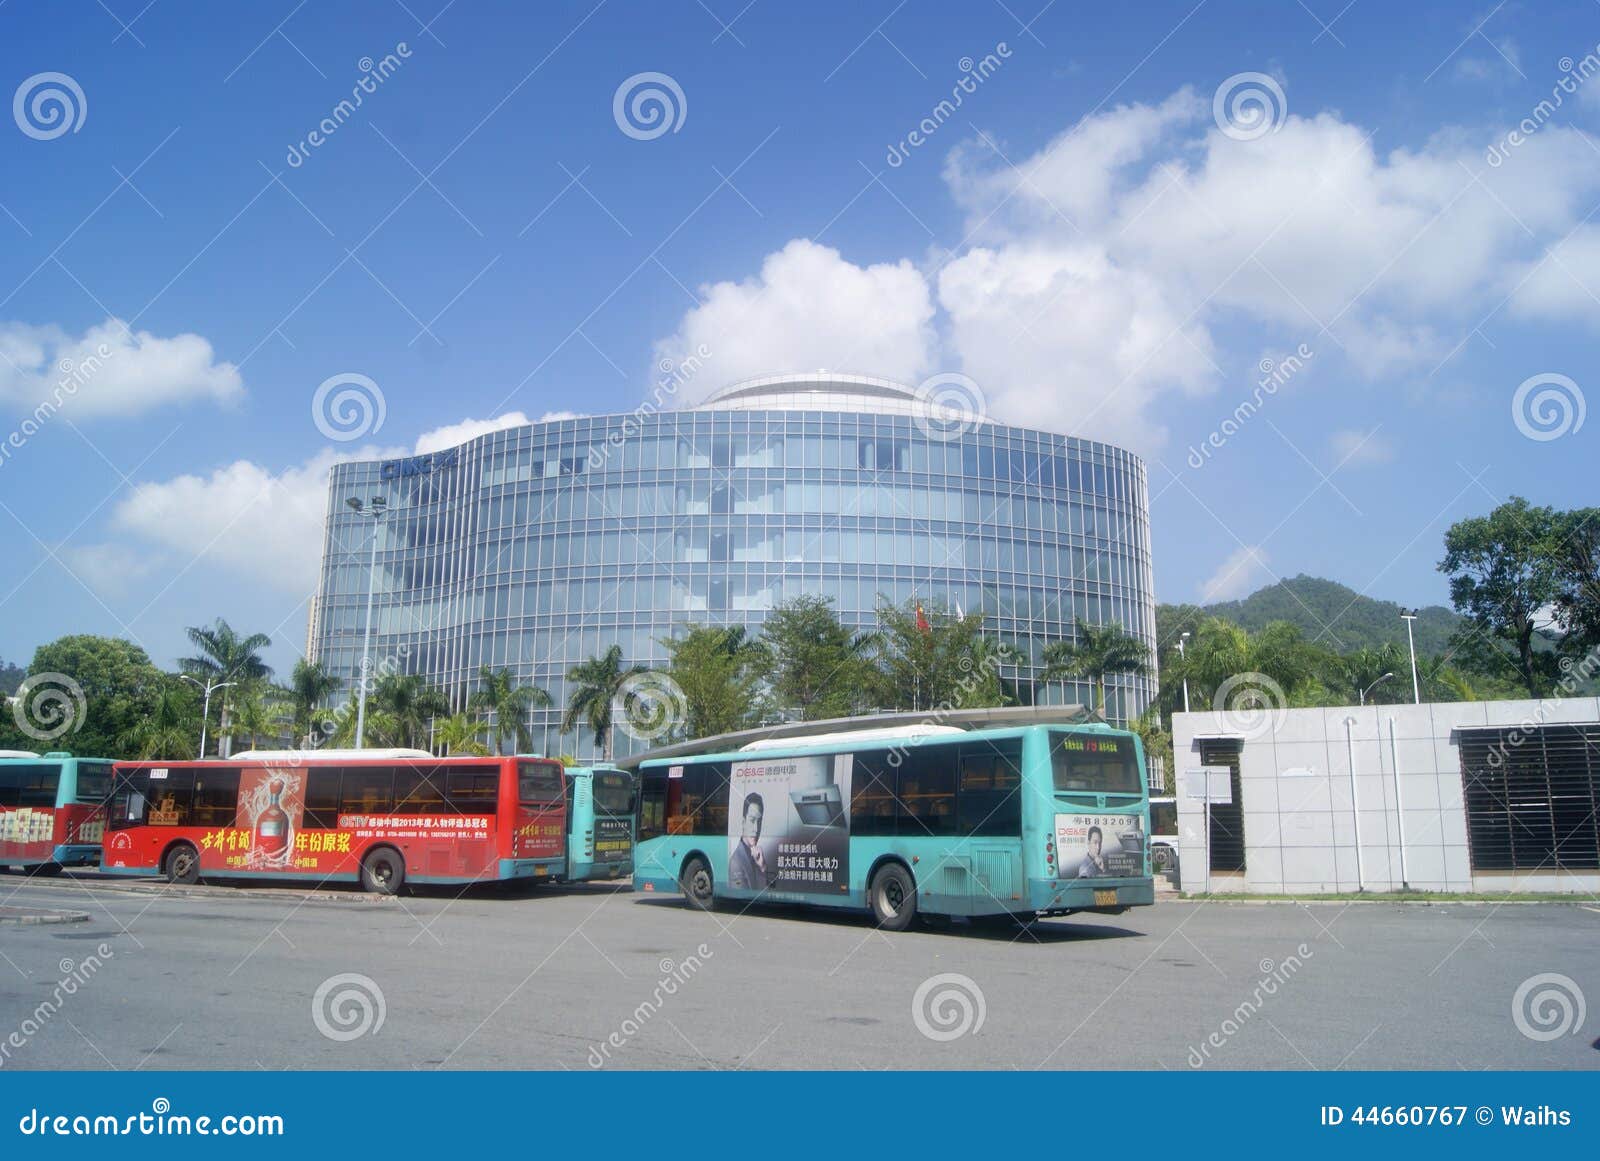 2019年广州天河客运站有去广西南宁的大客车